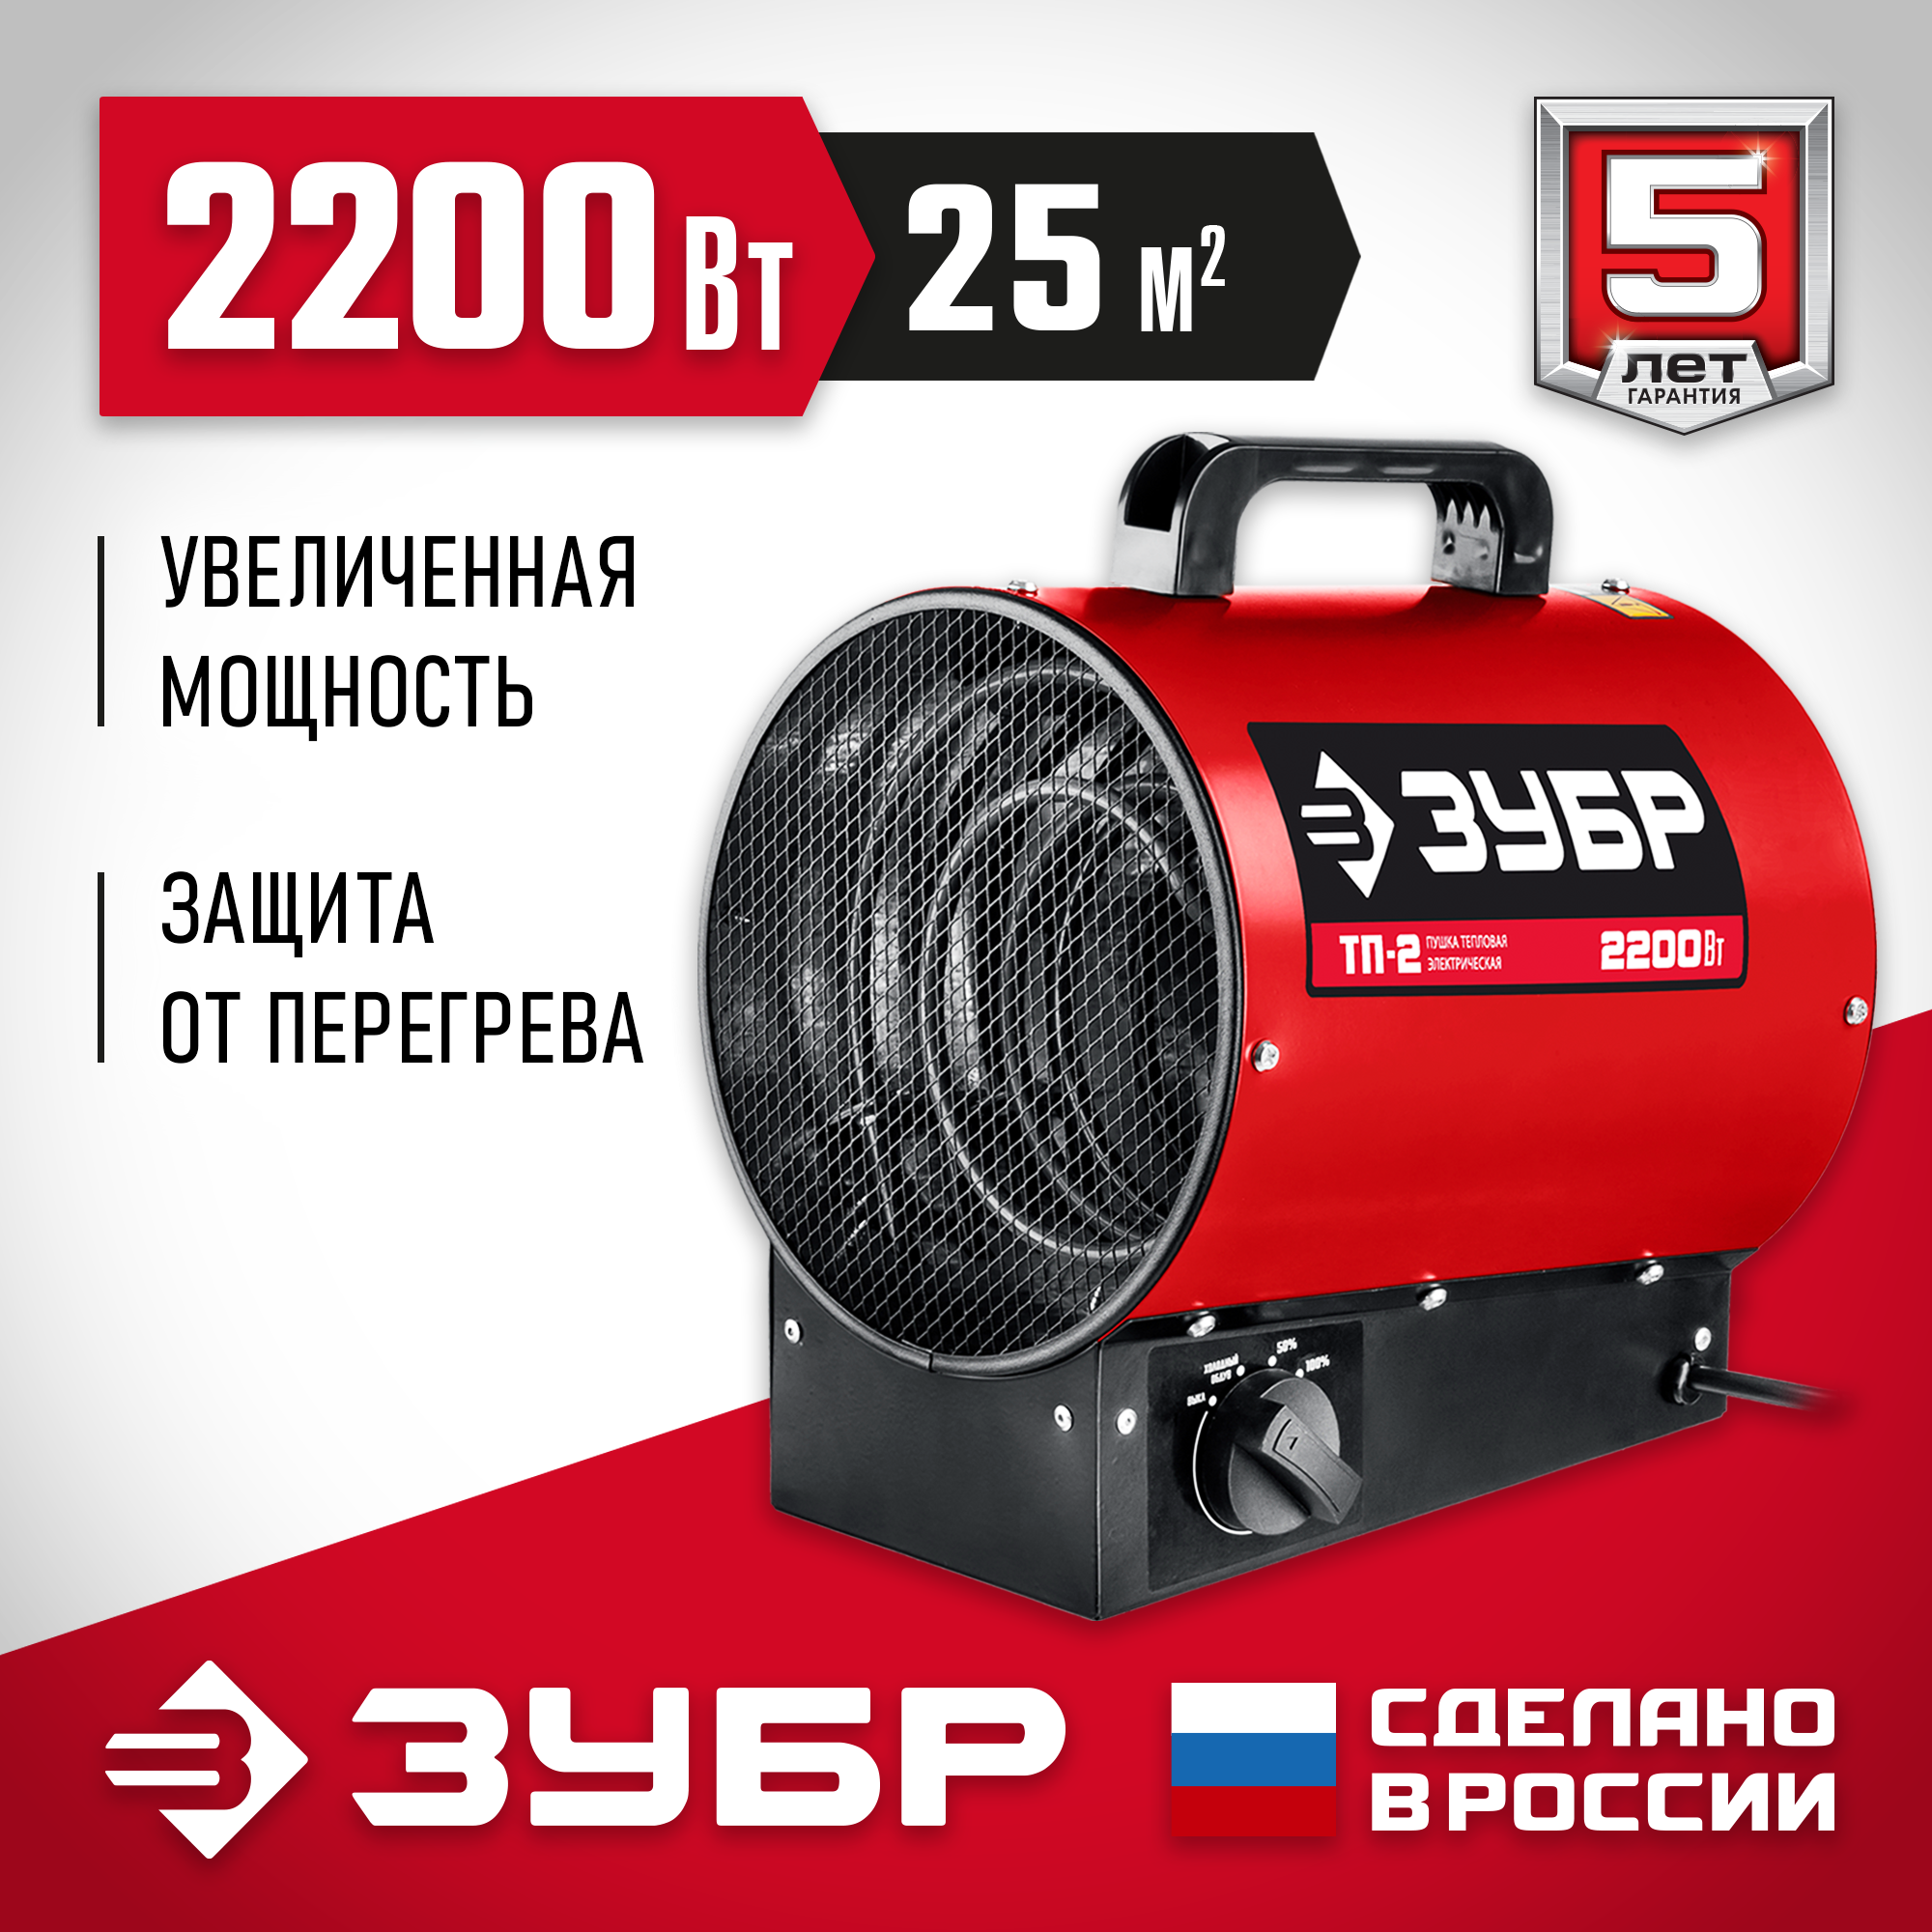 ЗУБР 2.2 кВт, электрическая тепловая пушка ТП-2 Мастер